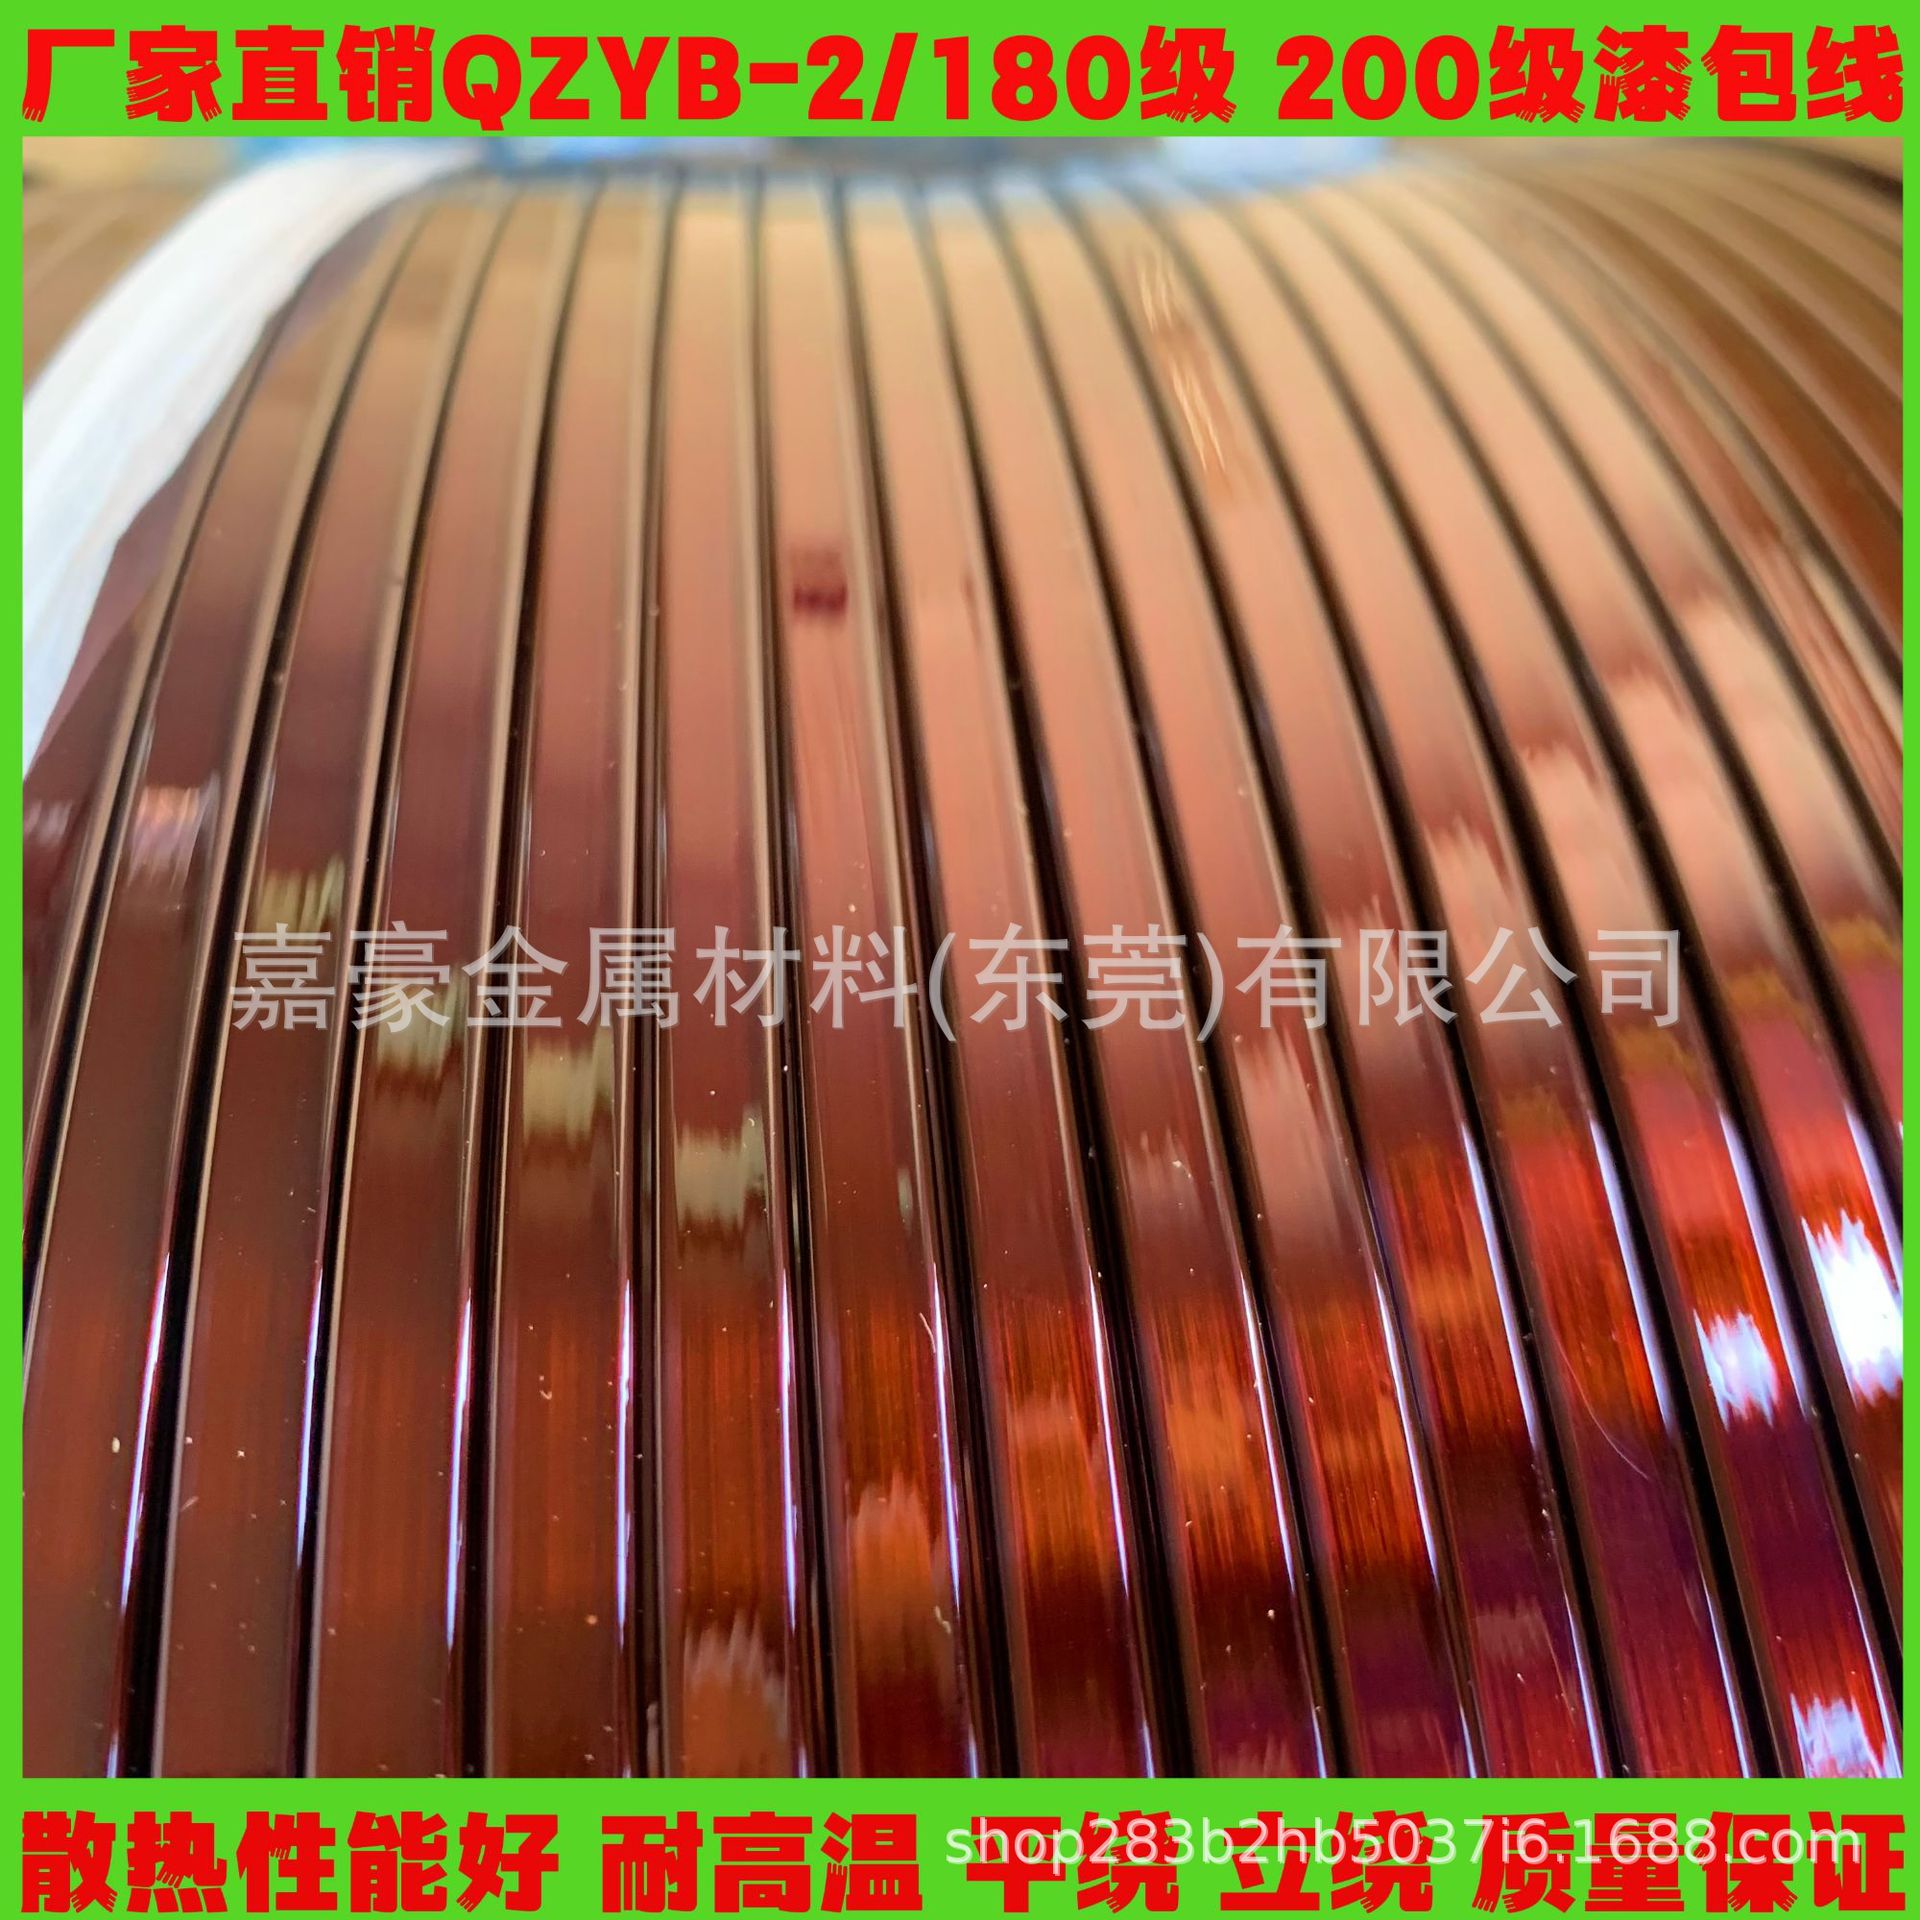 厂家直供漆包铜扁线 漆包铝扁线聚酯QZ/QZYB-2电抗器变压器漆包线